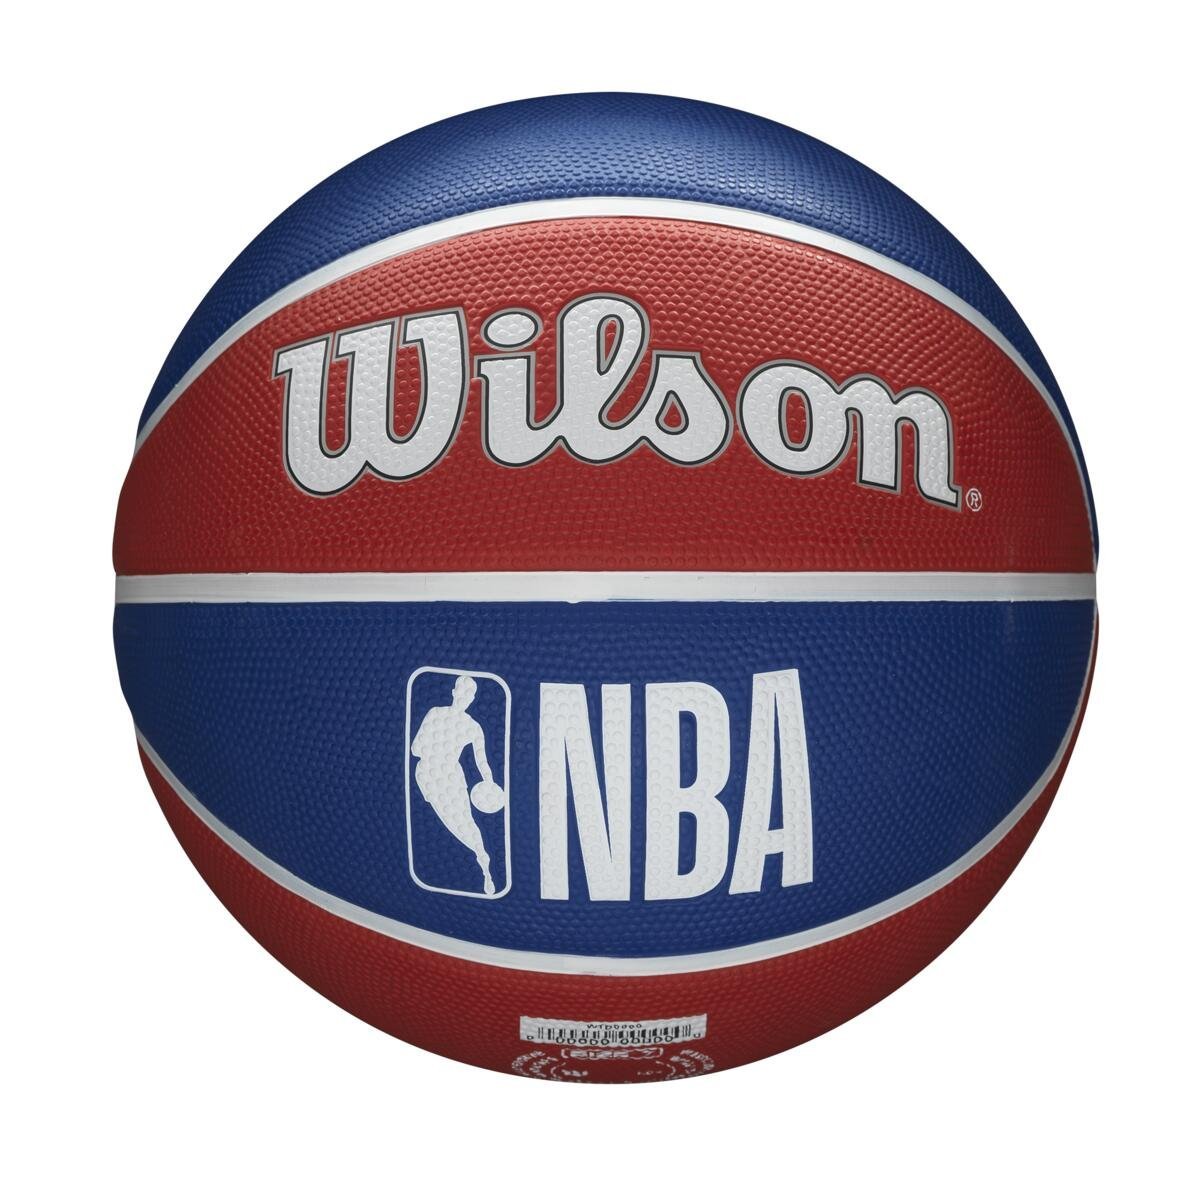 Lopta Wilson NBA Team Tribute Bskt La Clippers - červená